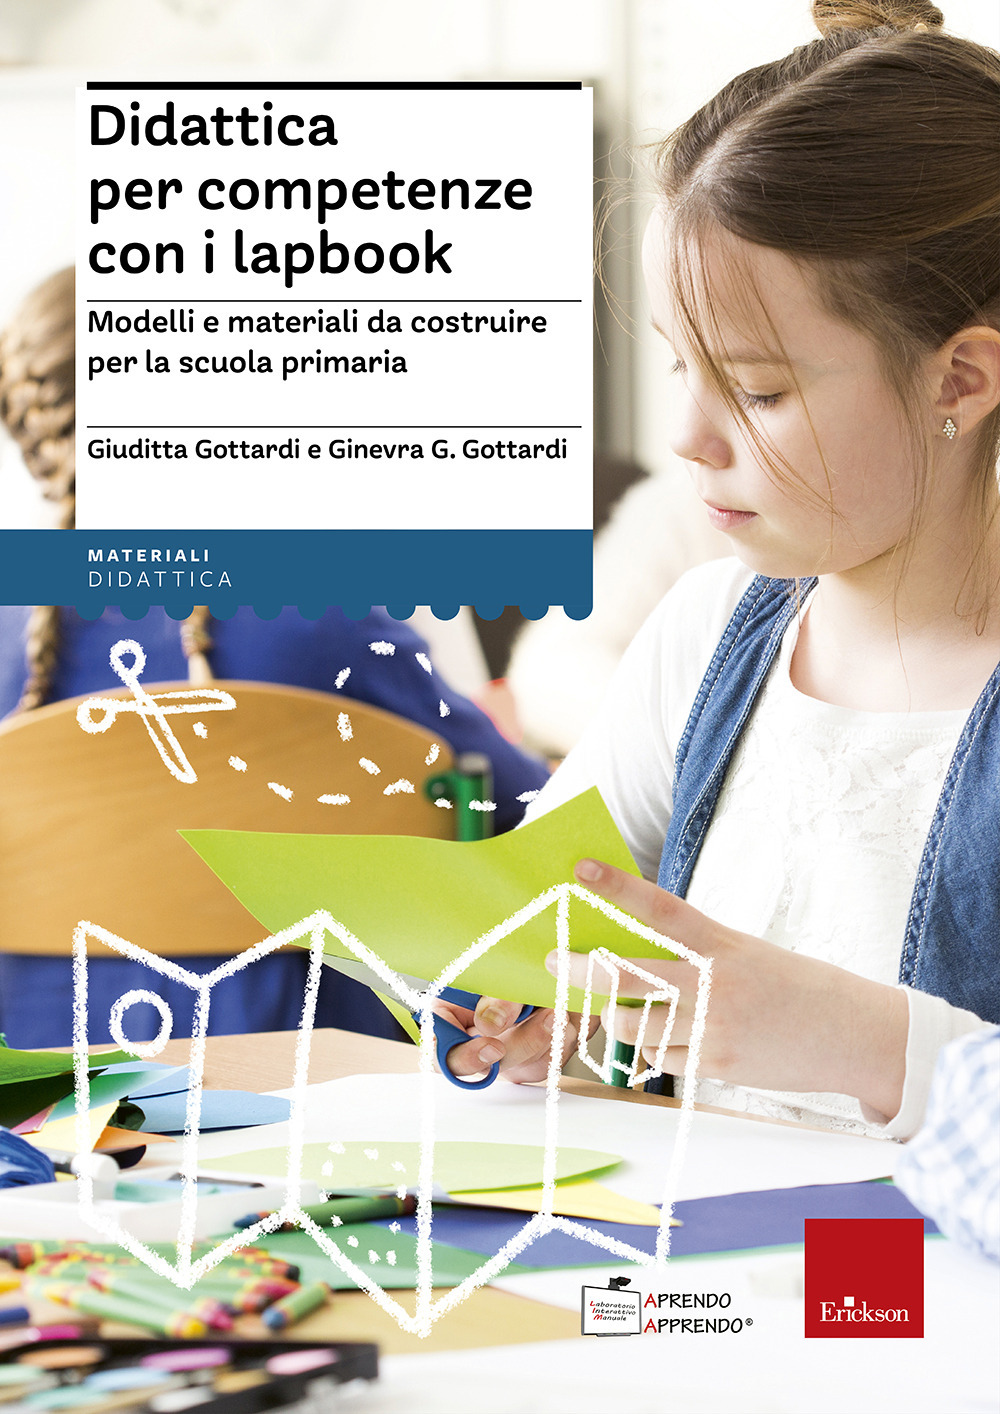 Didattica per competenze con i lapbook. Modelli e materiali da costruire per la scuola primaria